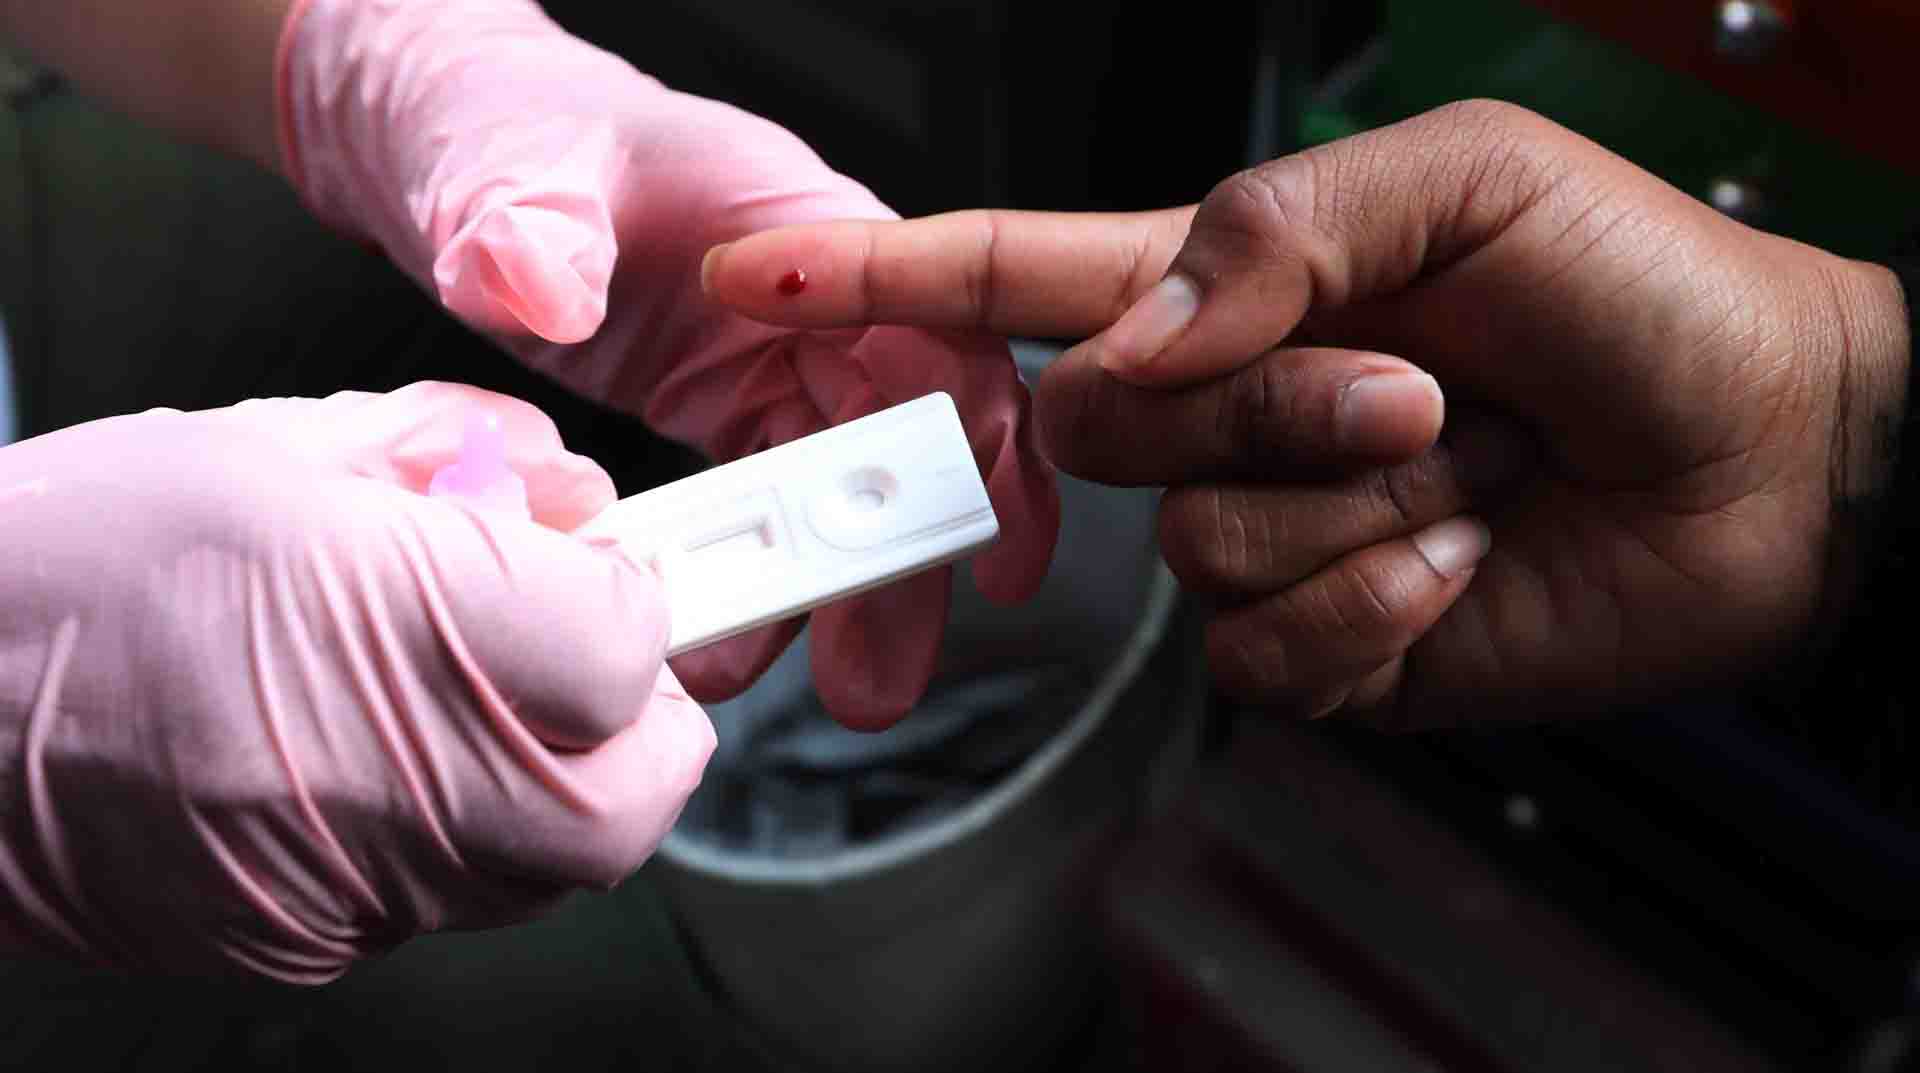 Imagen referencial. Latinoamérica vive una "crisis de prevención" del VIH y está "perdiendo el liderazgo" en la respuesta al virus. Foto: EFE.